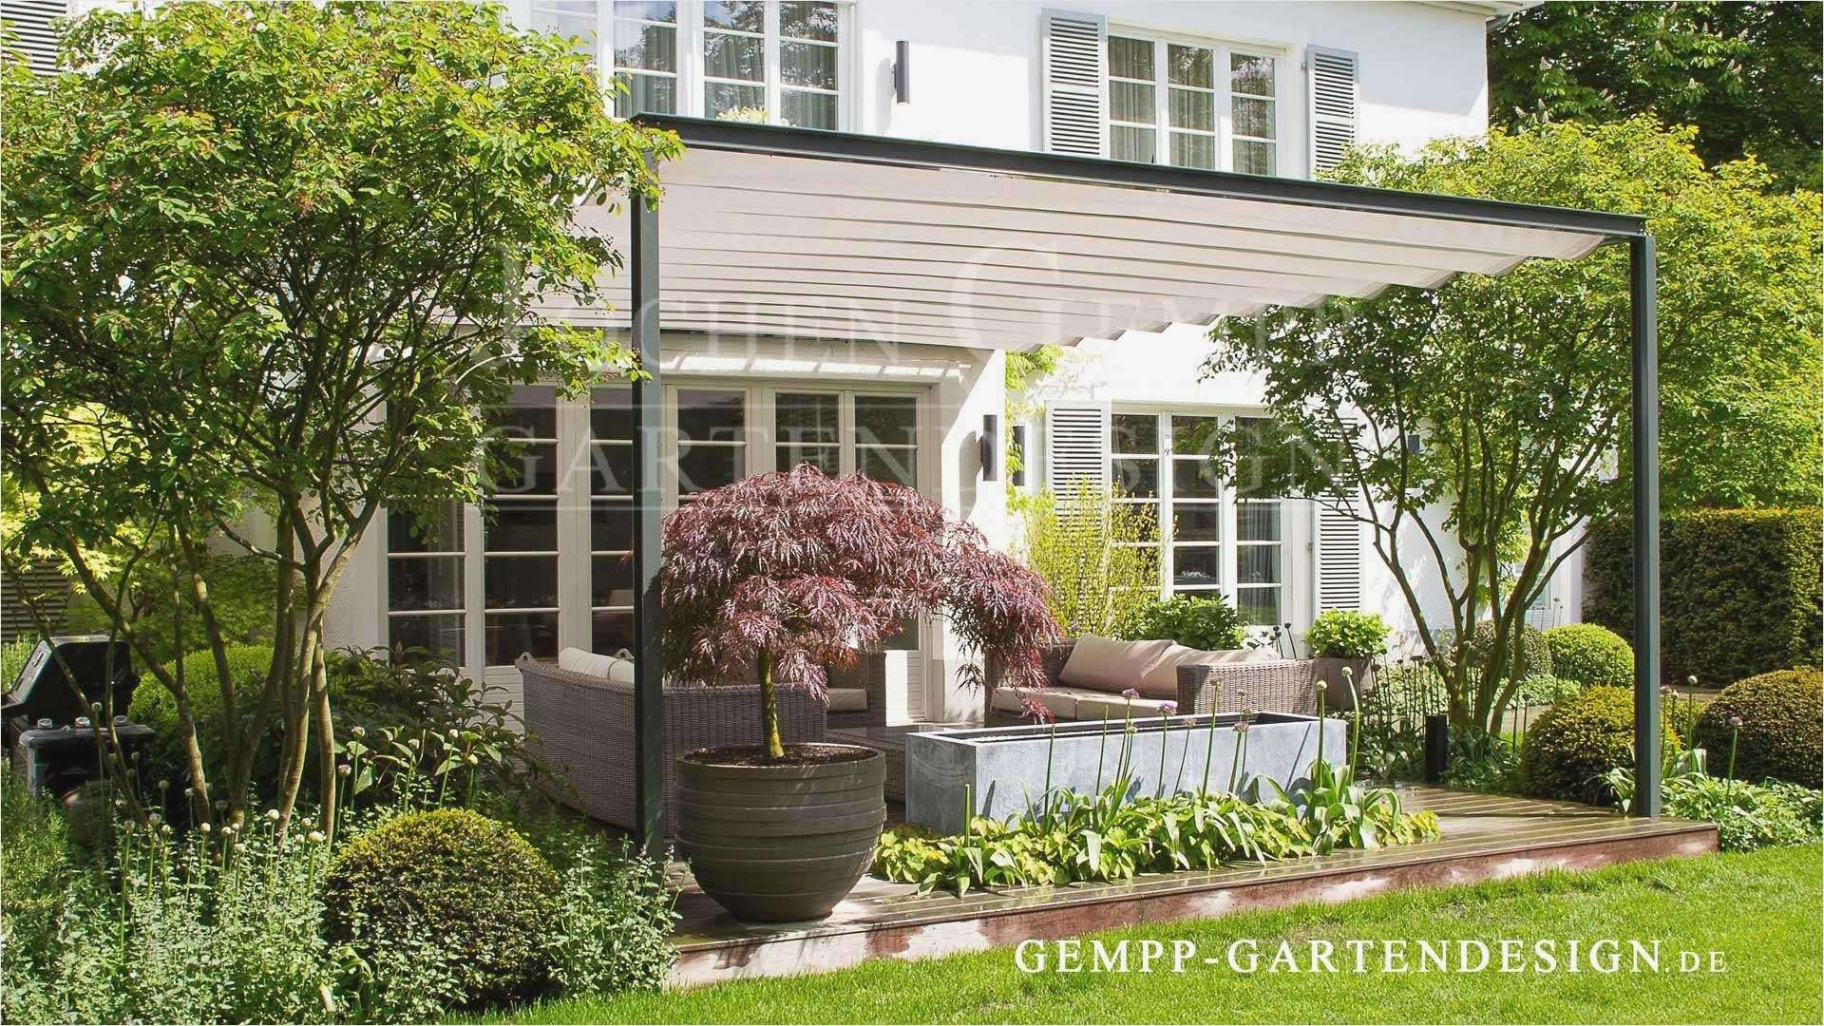 Gartendekoration Ideen Best Of Ideen Für Grillplatz Im Garten — Temobardz Home Blog